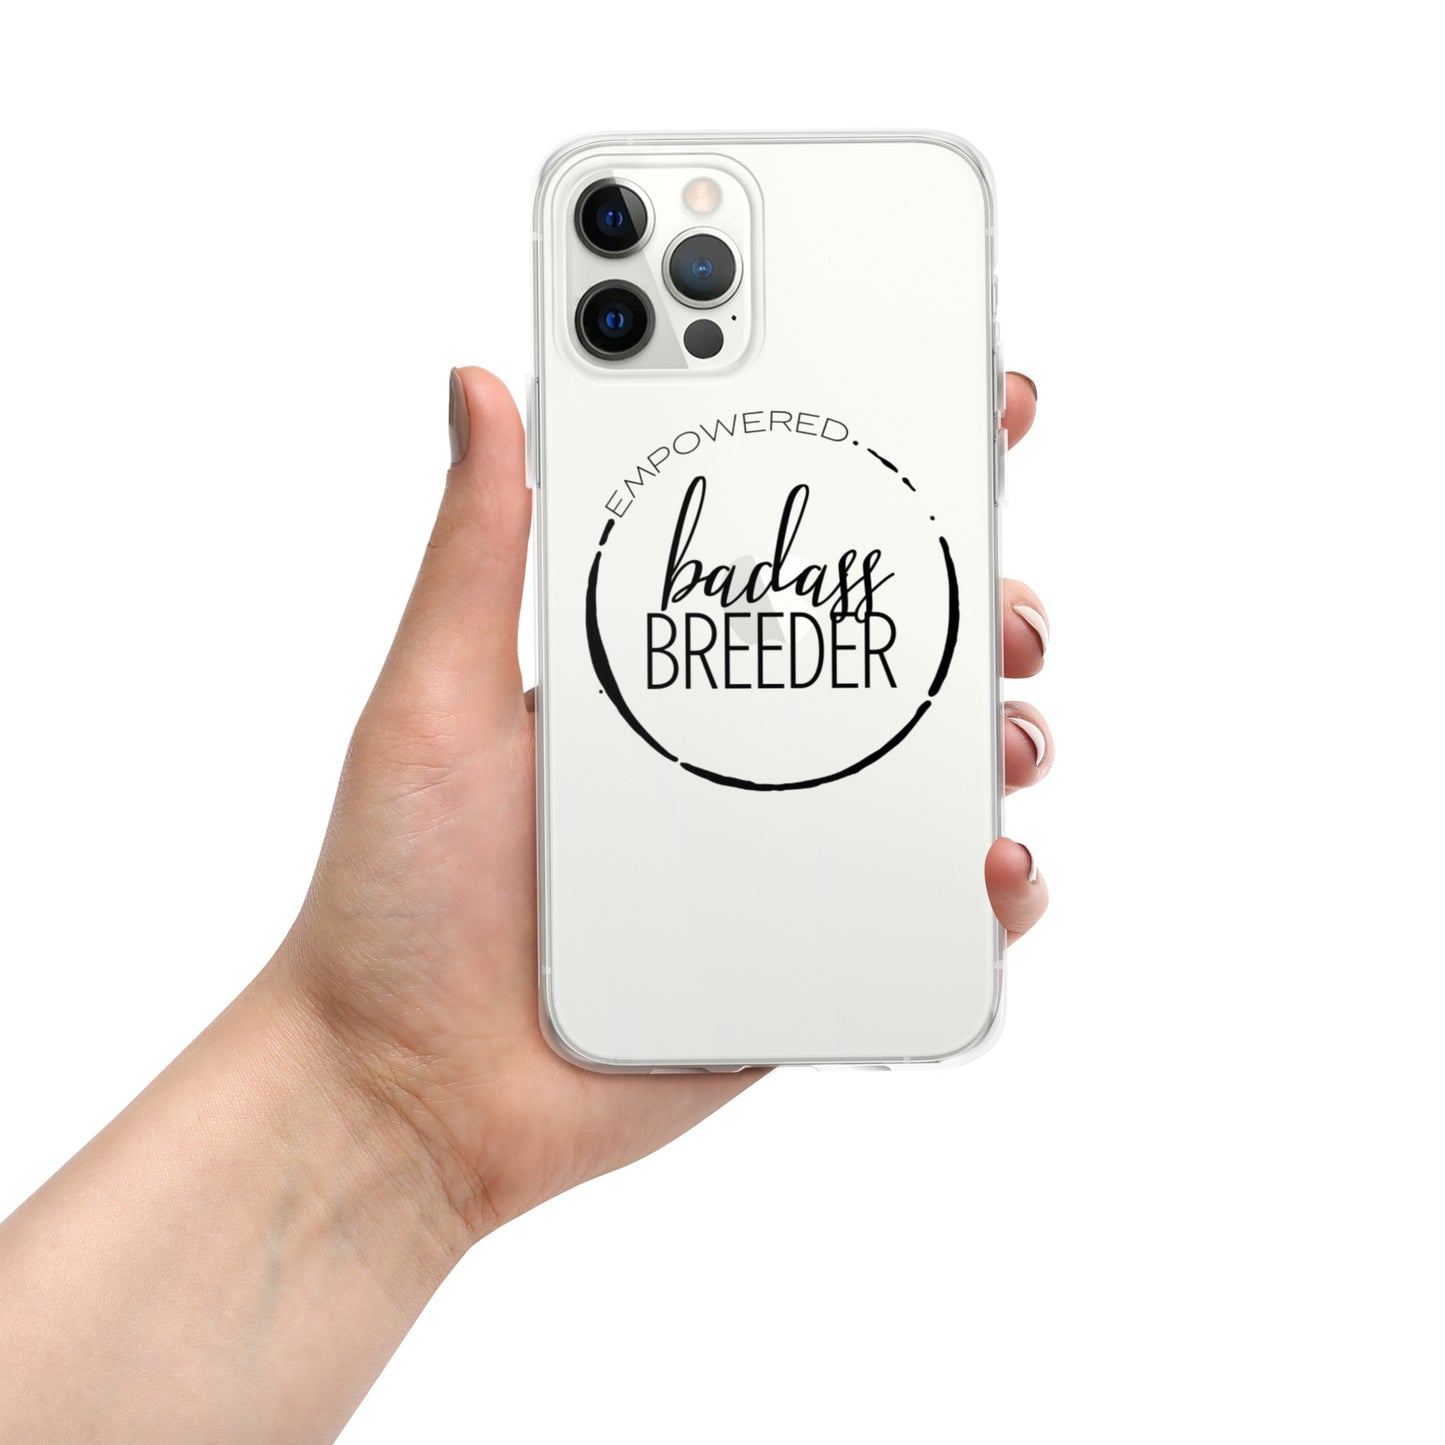 Badass Breeder iPhone Case